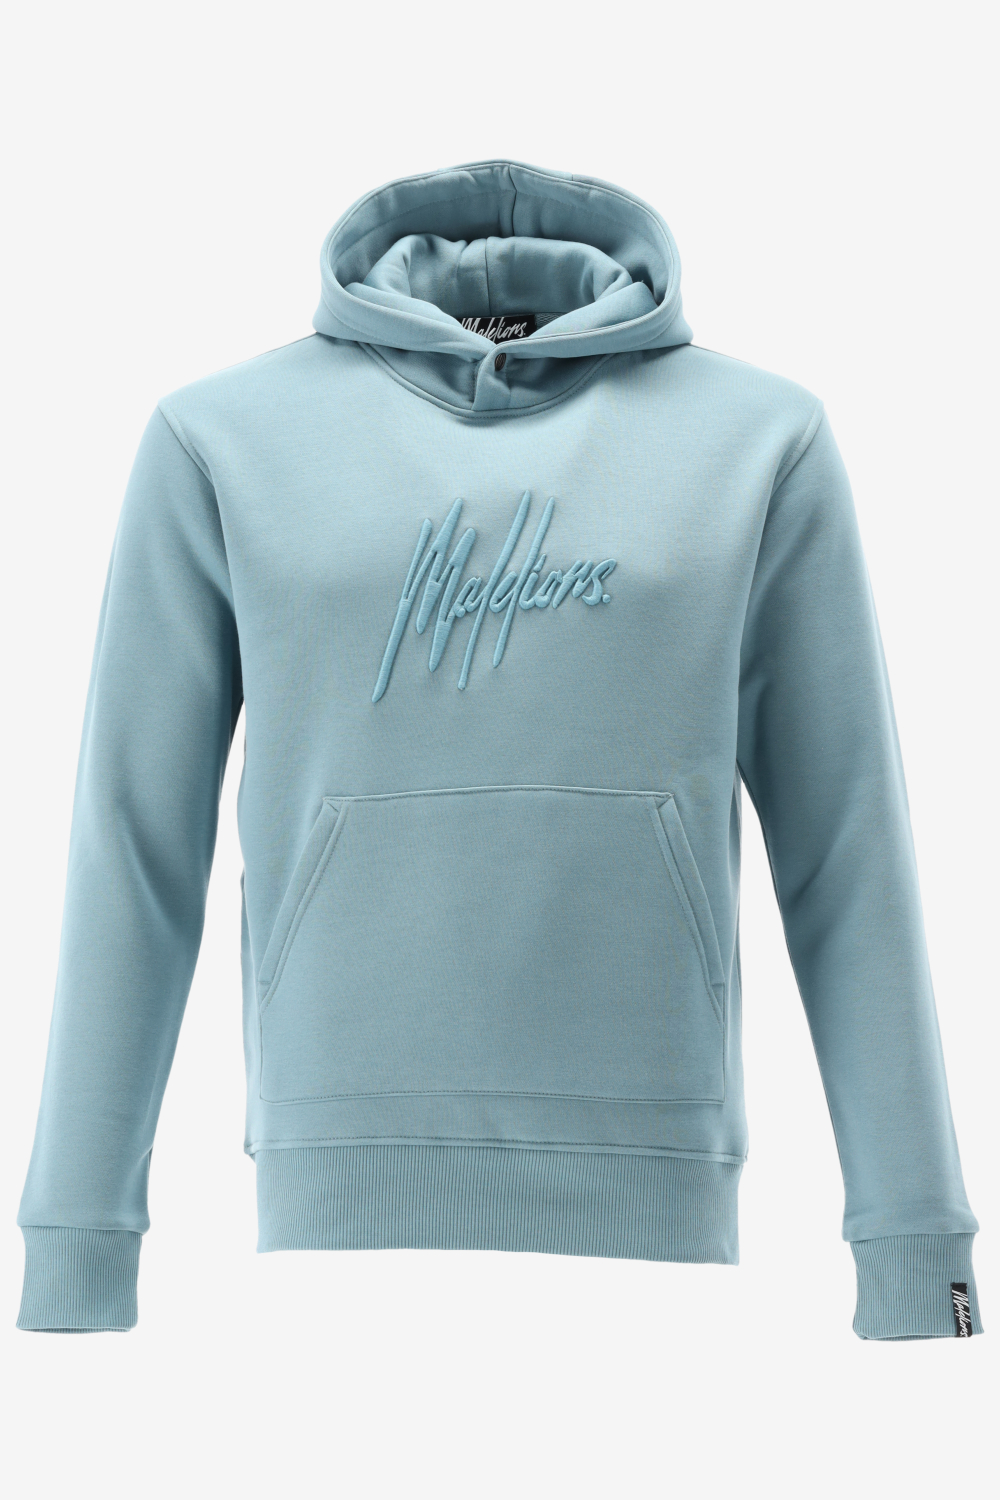 Malelions hoodie essentials hoodie maat L